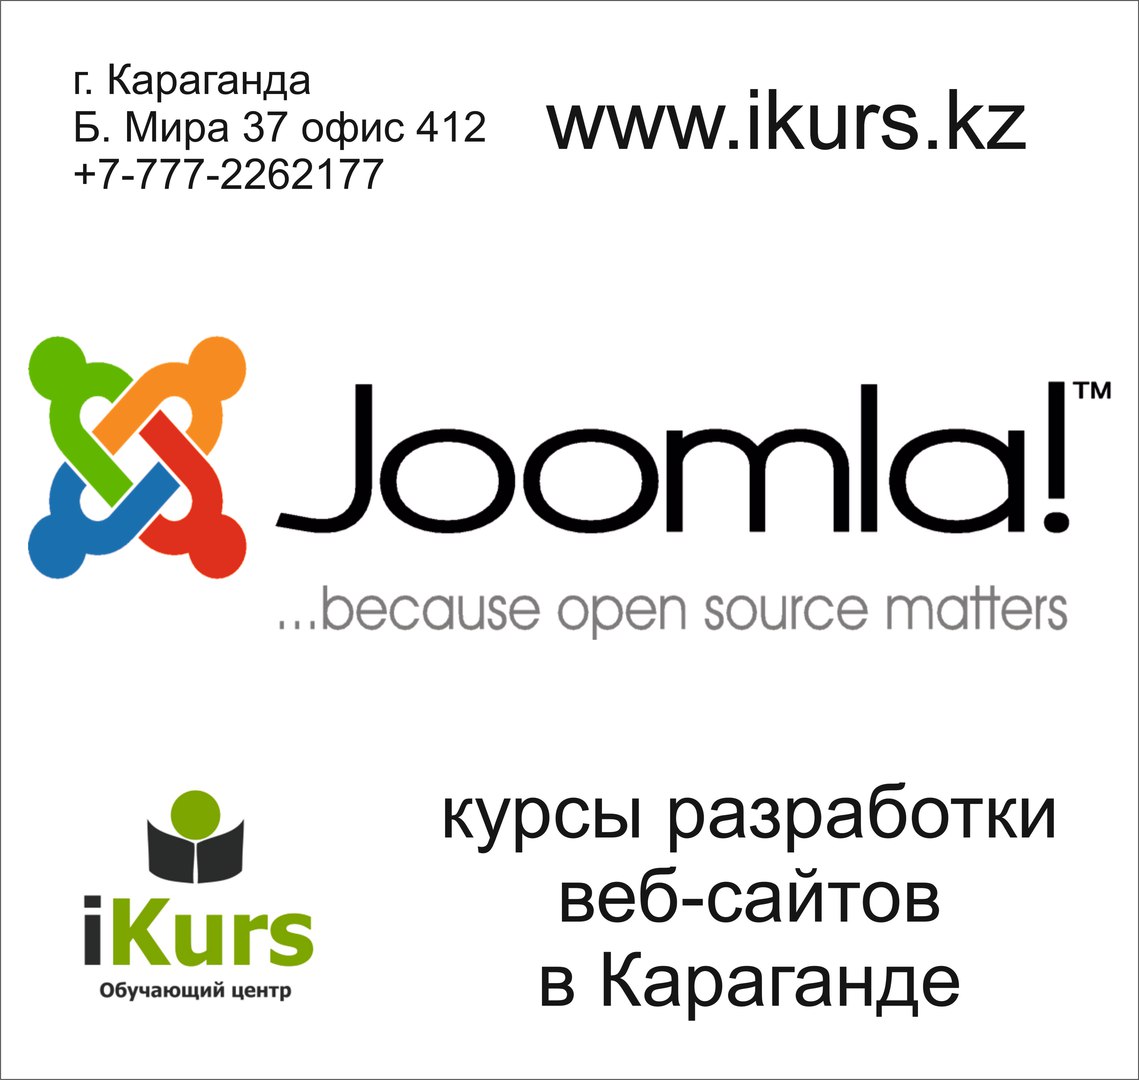 Курсы по созданию веб-сайтов на движке Joomla в Караганде. Обучающий центр Ikurs